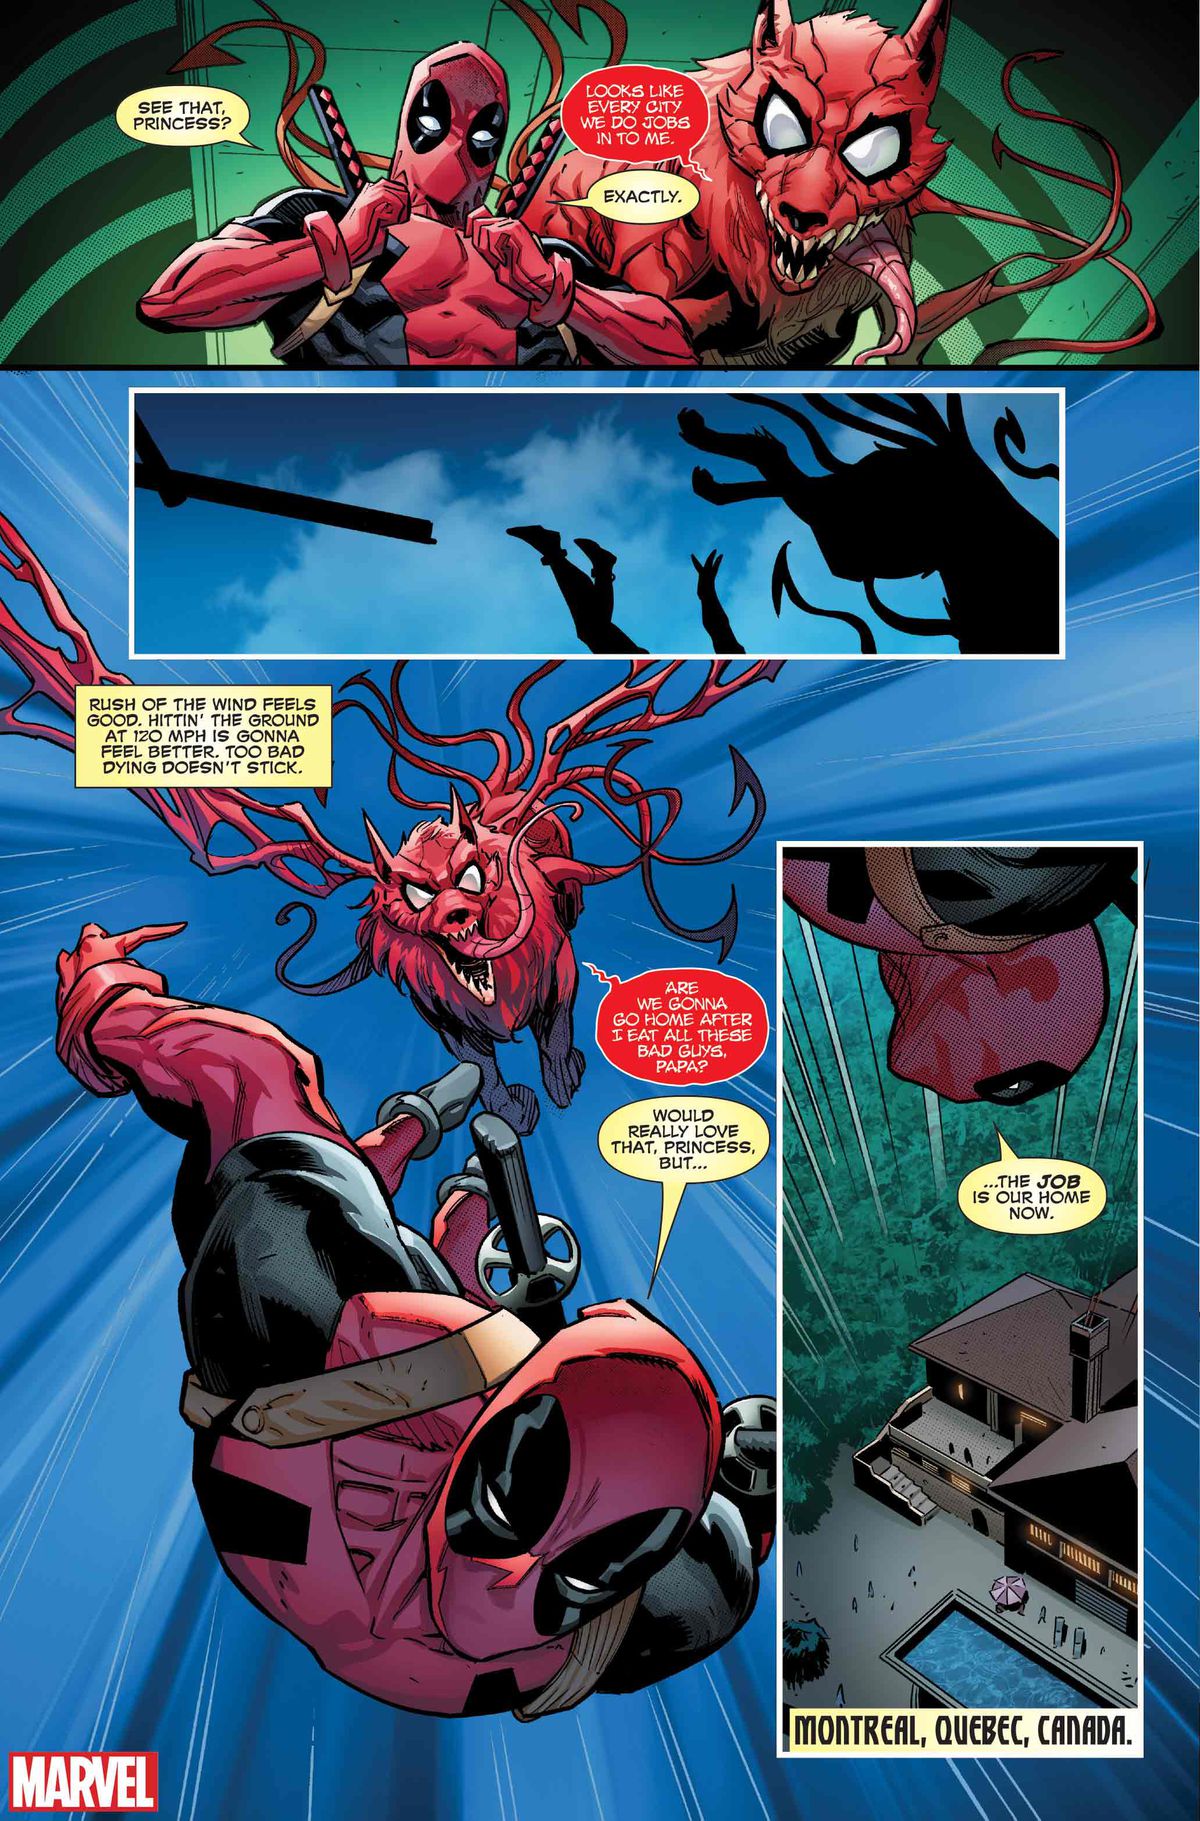 När de susar genom luften i Deadpool #1 (2024) frågar Princess Deadpool om de får åka hem efter att hon ätit upp alla skurkarna.  